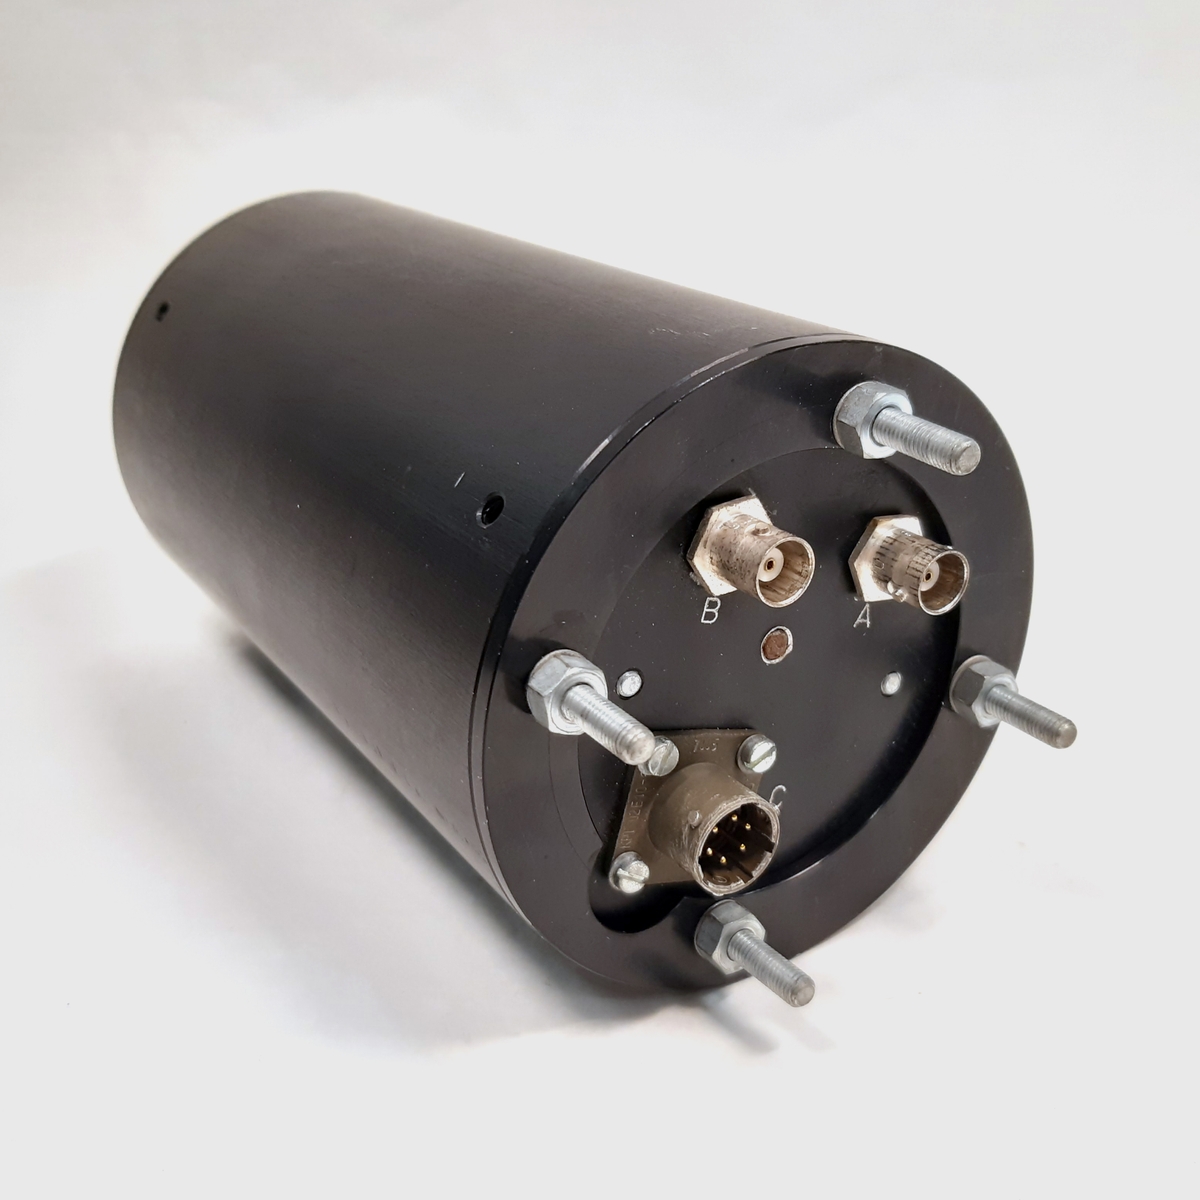 Sändare SU2-S, ind-nr: 2446. Sändaren består av en cylinderformad behållare i svart metall.